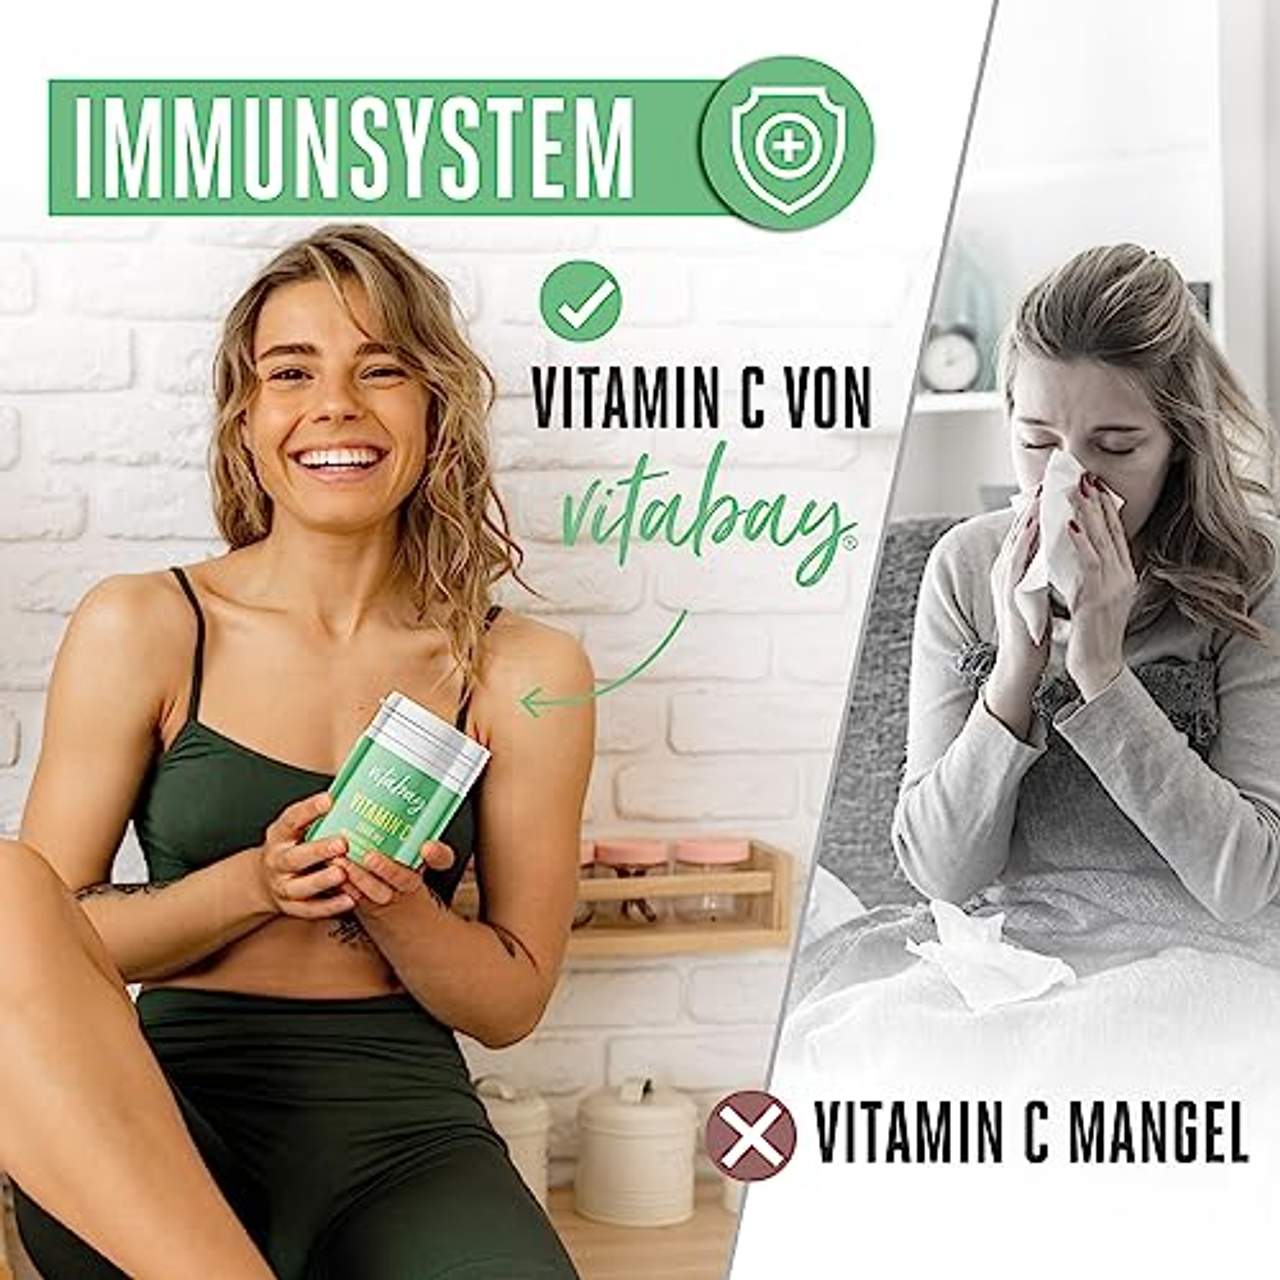 Vitabay Vitamin C 1000 mg